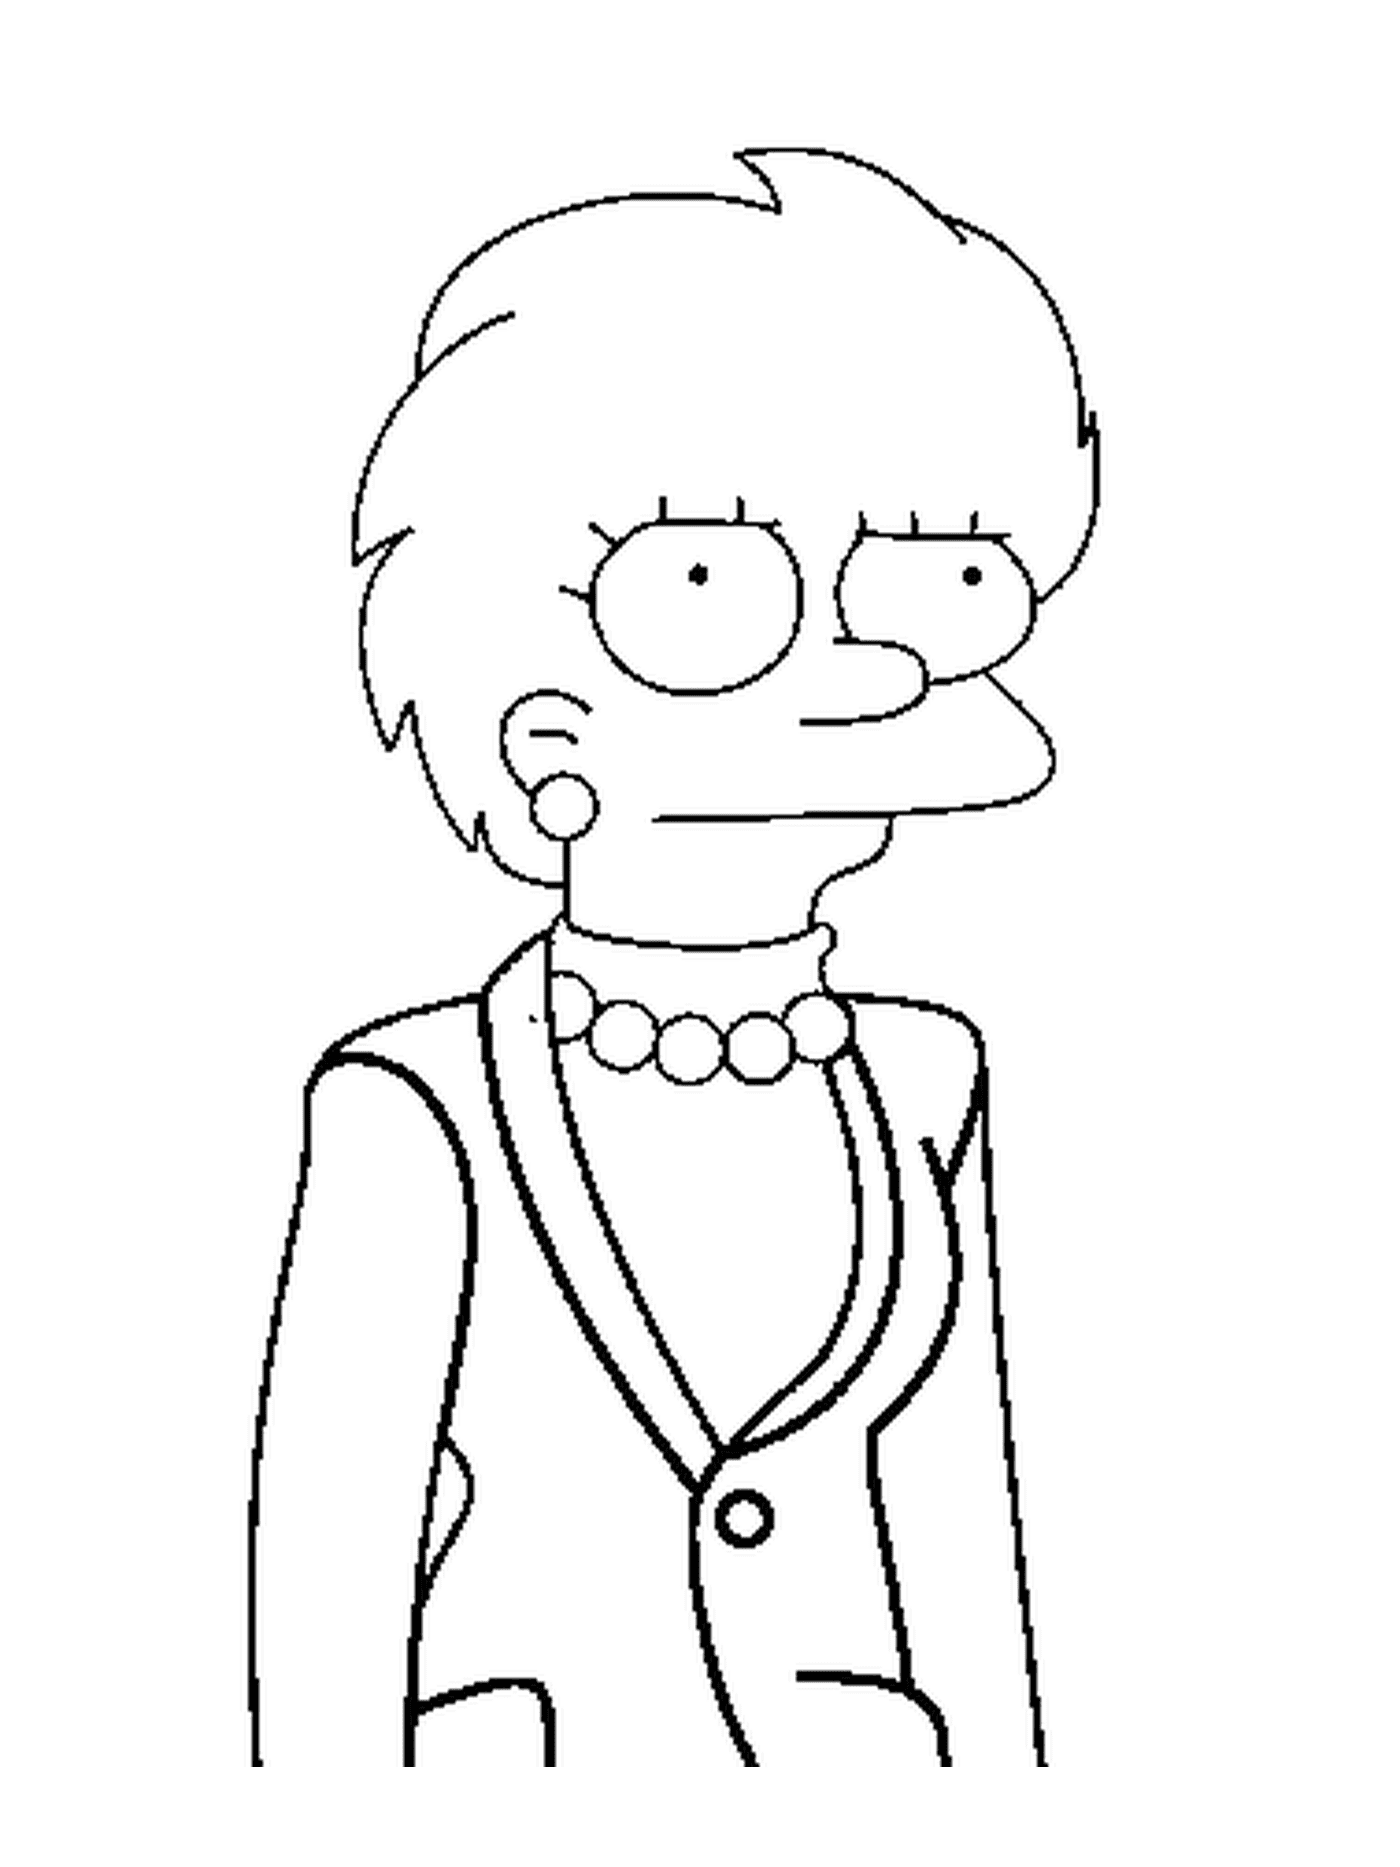  Lisa Simpson, 未来总统 